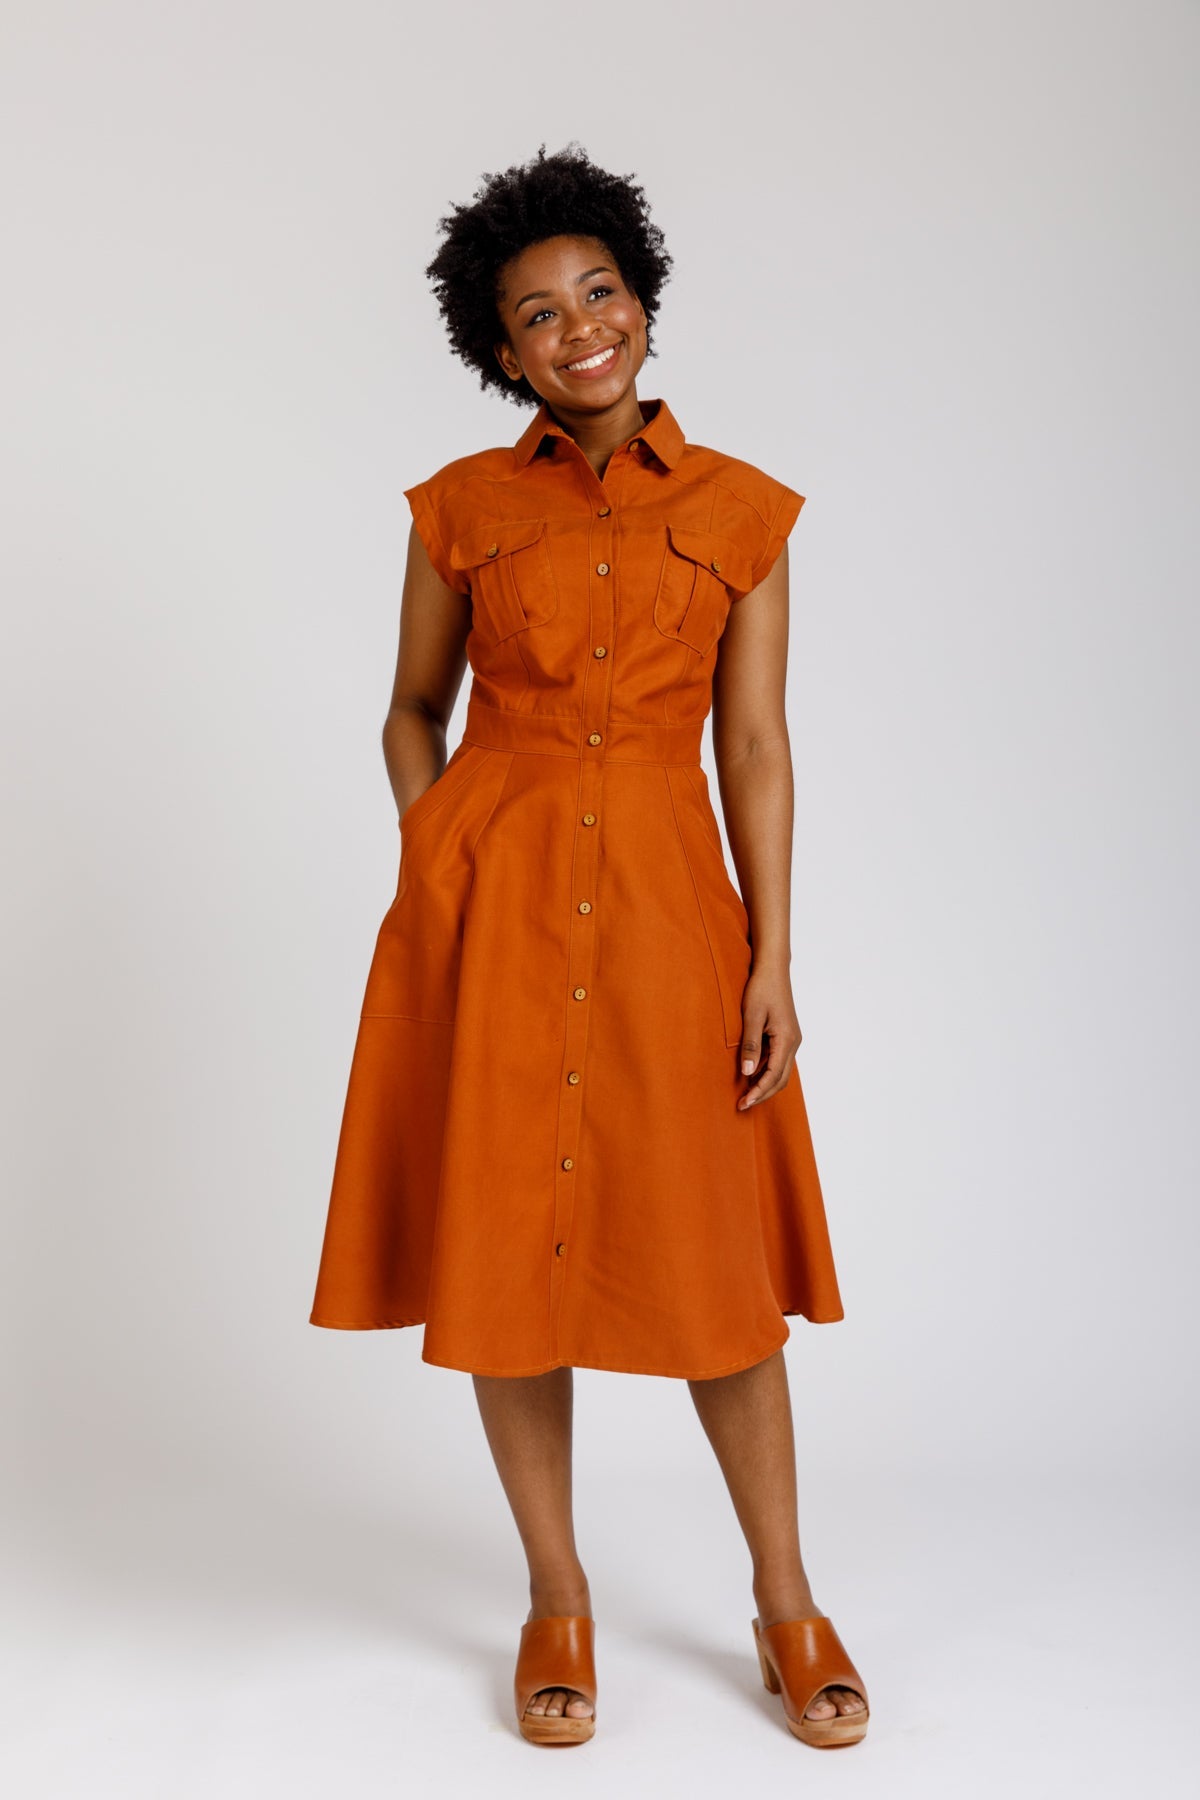 http://corefabricstore.com/cdn/shop/products/Megan-Nielsen-Matilda-Dress--Core-Fabrics.jpg?v=1676123569